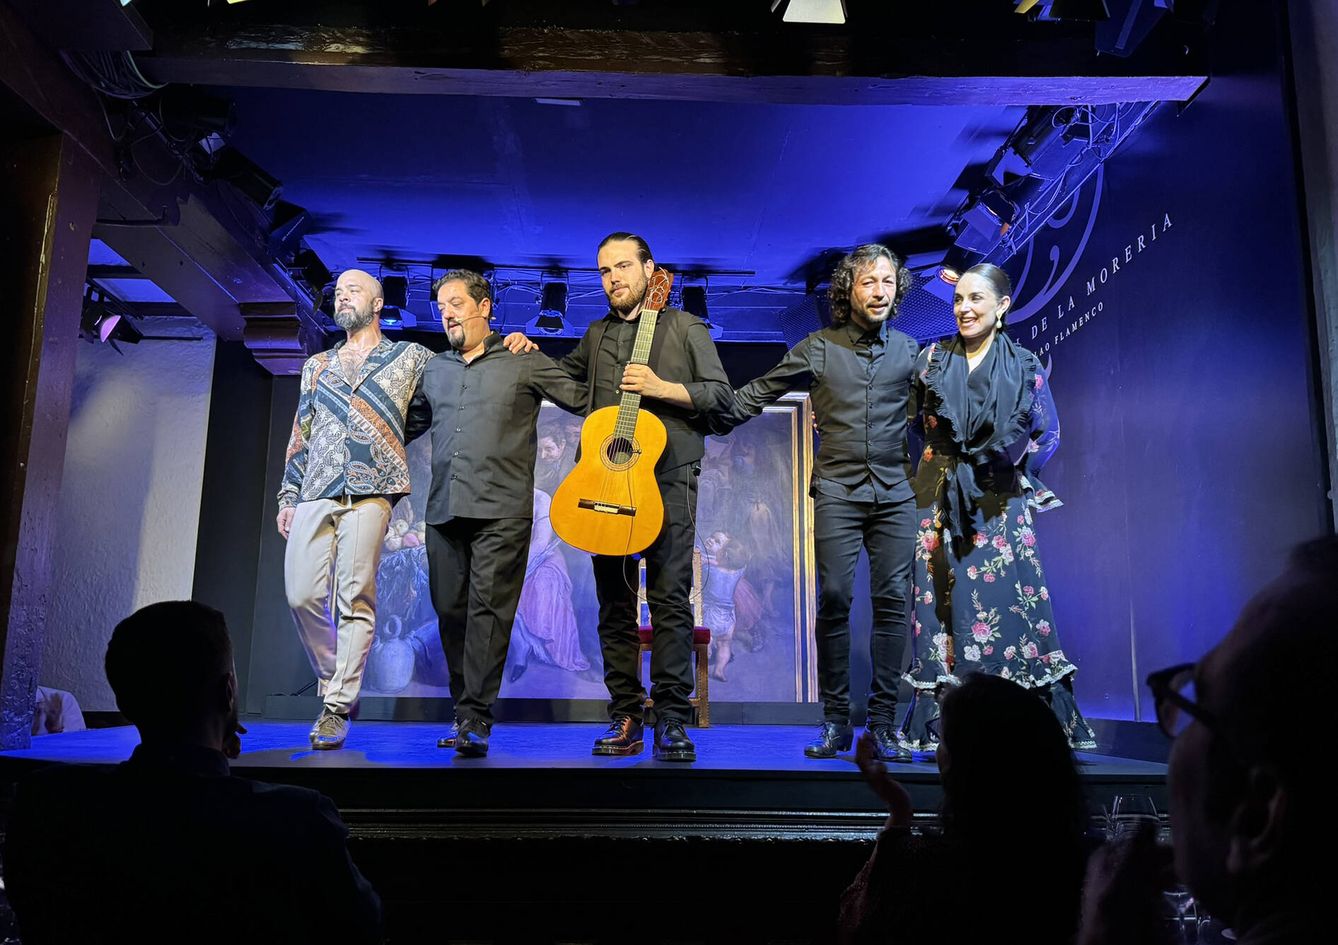 Espectáculo en el Corral de la Morería: Nino de los Reyes, Enrique Piculabe, Joni Jiménez, Miguel Lavy y Paula Comitre. (Rafael Ansón)